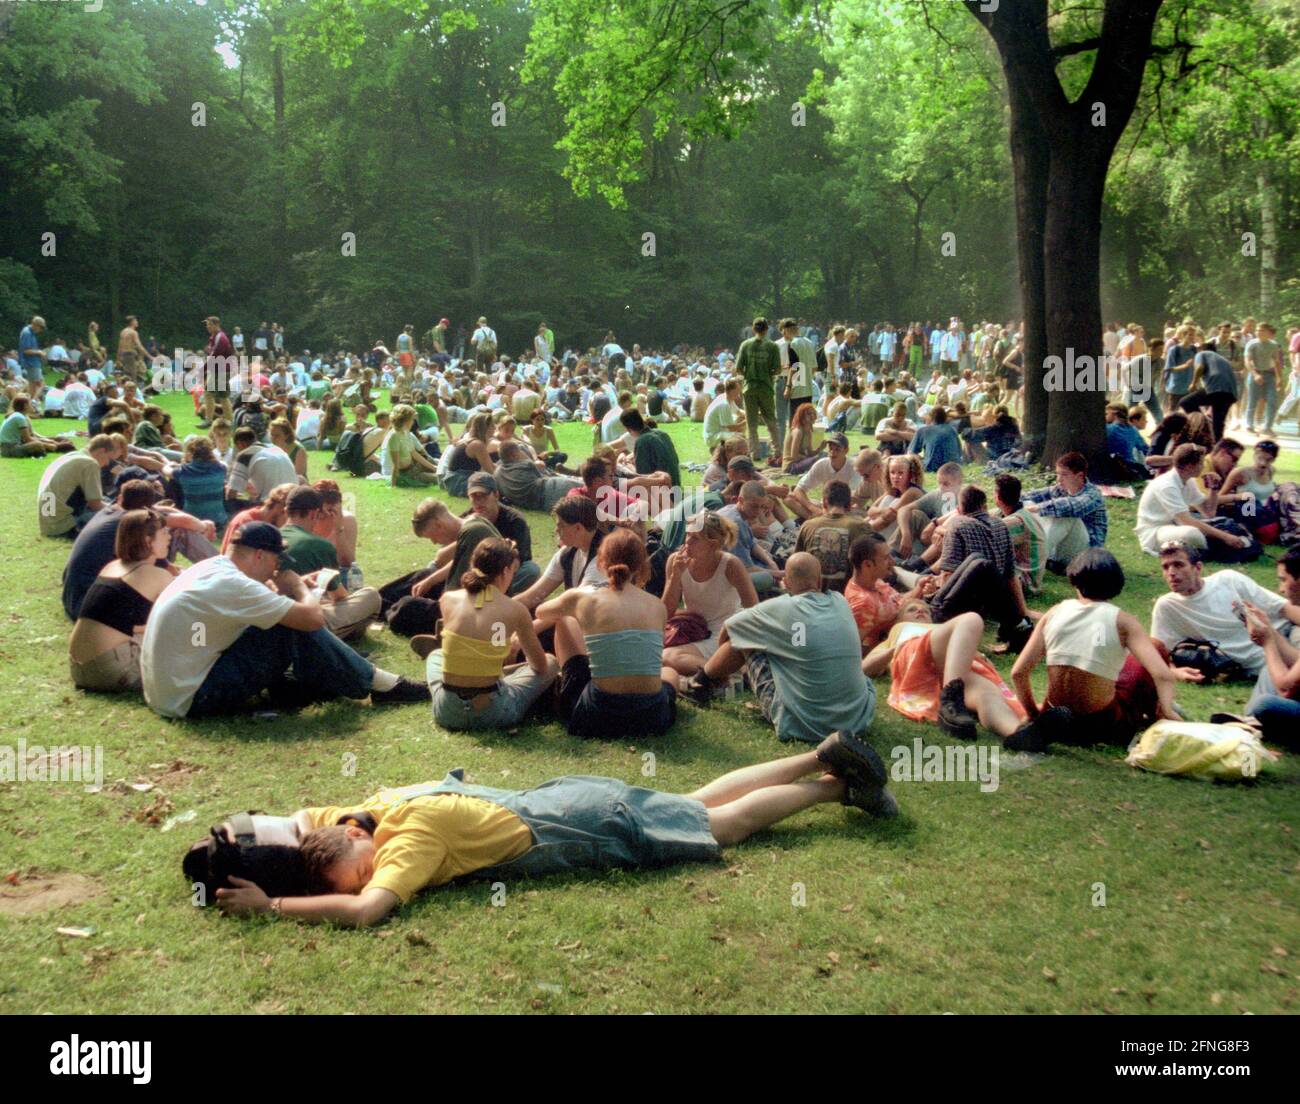 Berlino / Festivals / giovani / Love Parade 12.7.1997 Strasse des 17. Juni- Break from dancing in the Tiergarten, // Danza / Ragazze / Sesso / Donne / Festival / Parco *** Local Caption *** Love Parade / giovani / Donne / Festival / l'LP è stato fatto dal 1989 (150 partecipanti) come dimostrazione politica. Gli organizzatori erano i club di danza techno. Nel 1996 vi erano per la prima volta più di 1 milione di partecipanti per la strada del 17 giugno, nel 1999 1.5 milioni. All'inizio i partecipanti erano sulla velocità e sul cristallo, nel 1996 la maggior parte di loro erano bevitori di alcool (Jaegermeister), e. Foto Stock